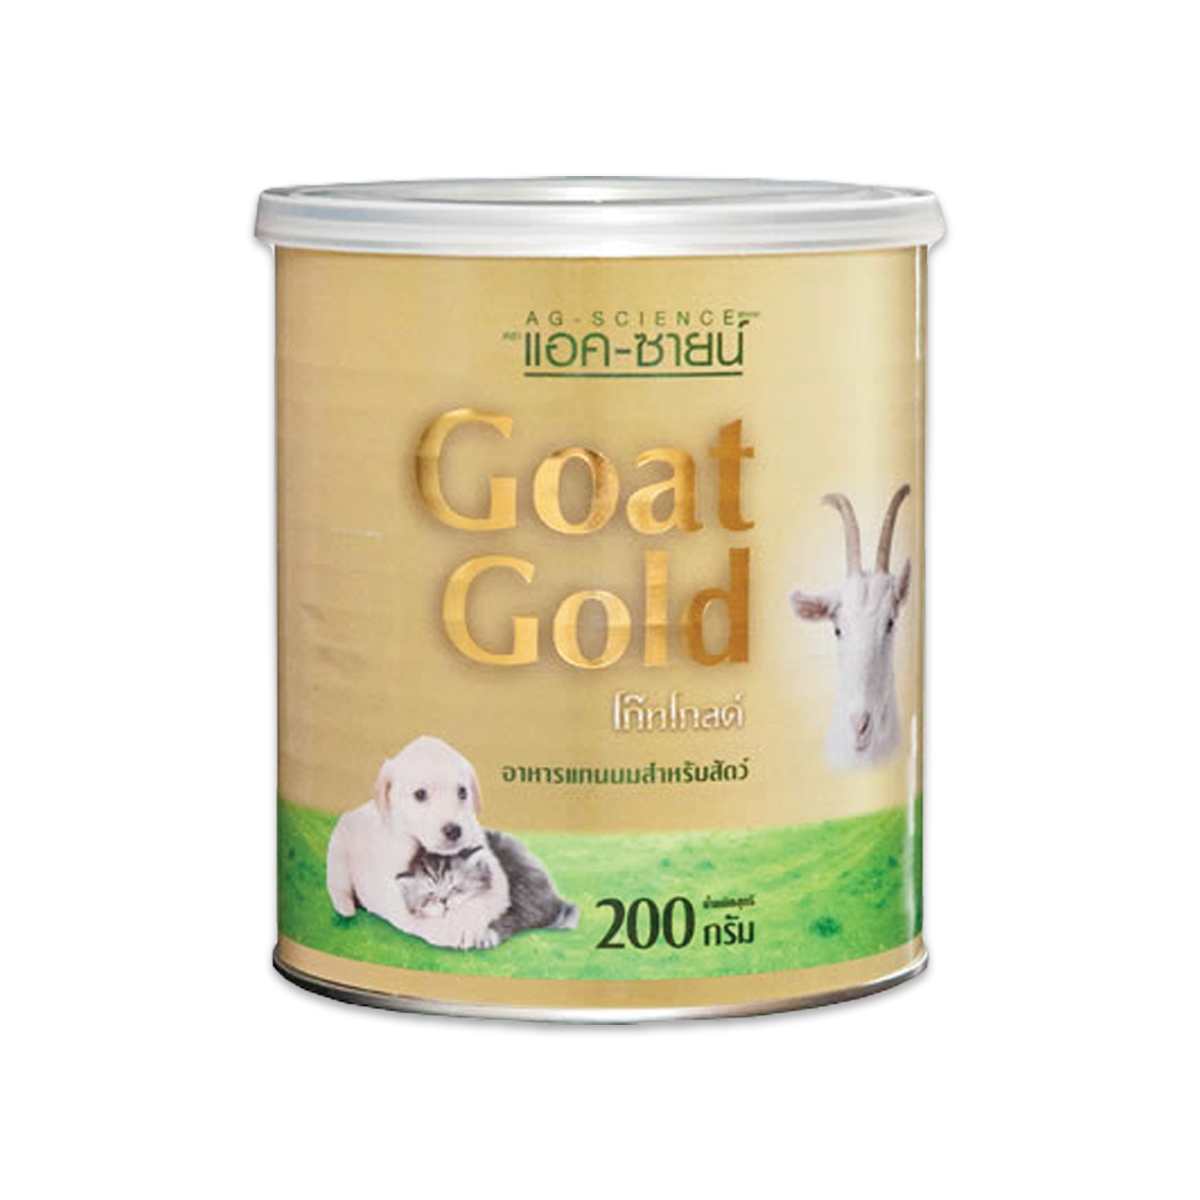 AG-Science Goat Gold แอค-ซายน์ โก๊ทโกลด์ อาหารแทนนมสำหรับสัตว์ ขนาด 200 กรัม